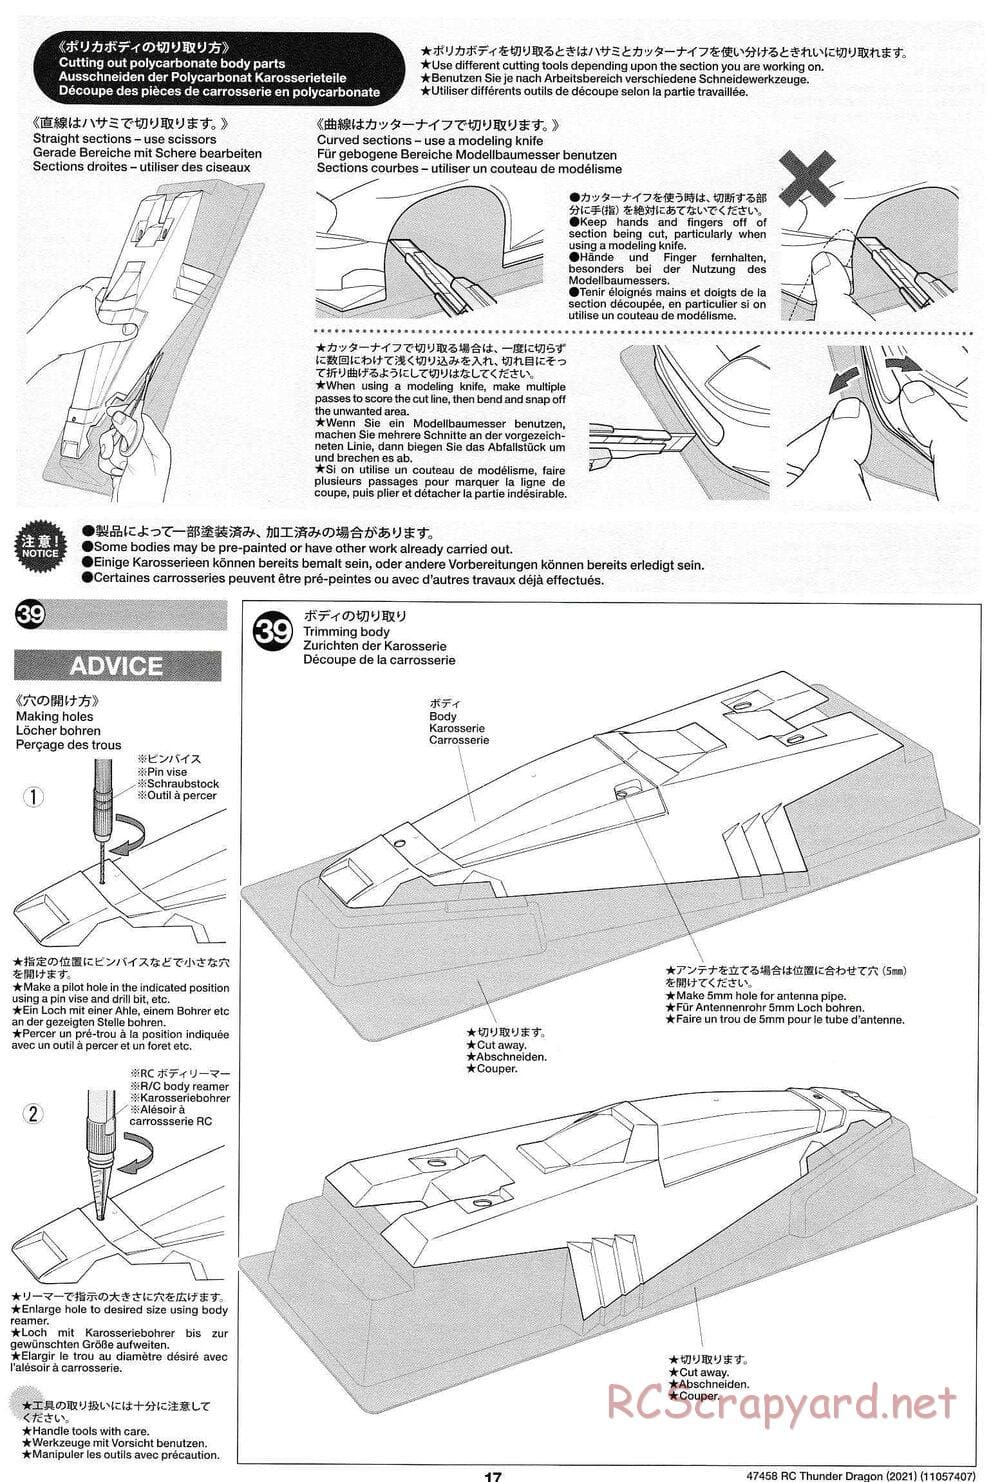 Tamiya - Thunder Dragon (2021) Chassis - Manual - Page 17